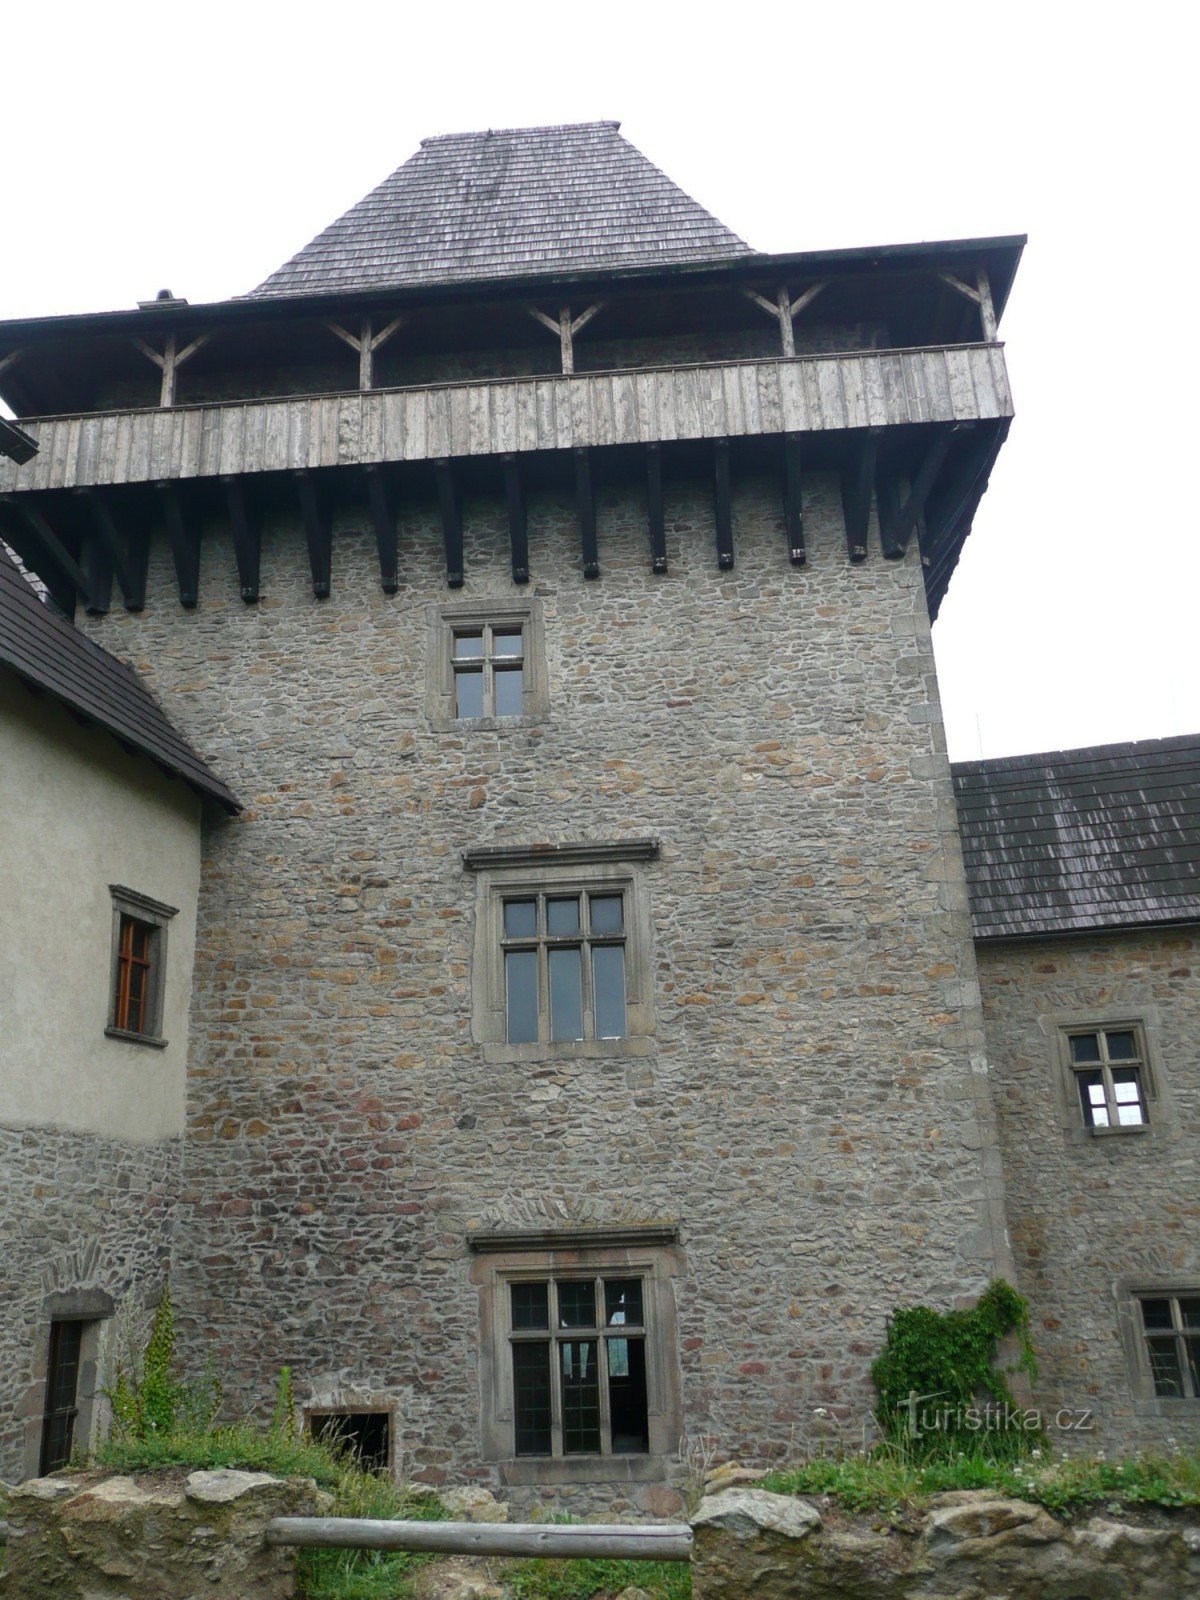 Castelo de Lipnice nad Sázavou